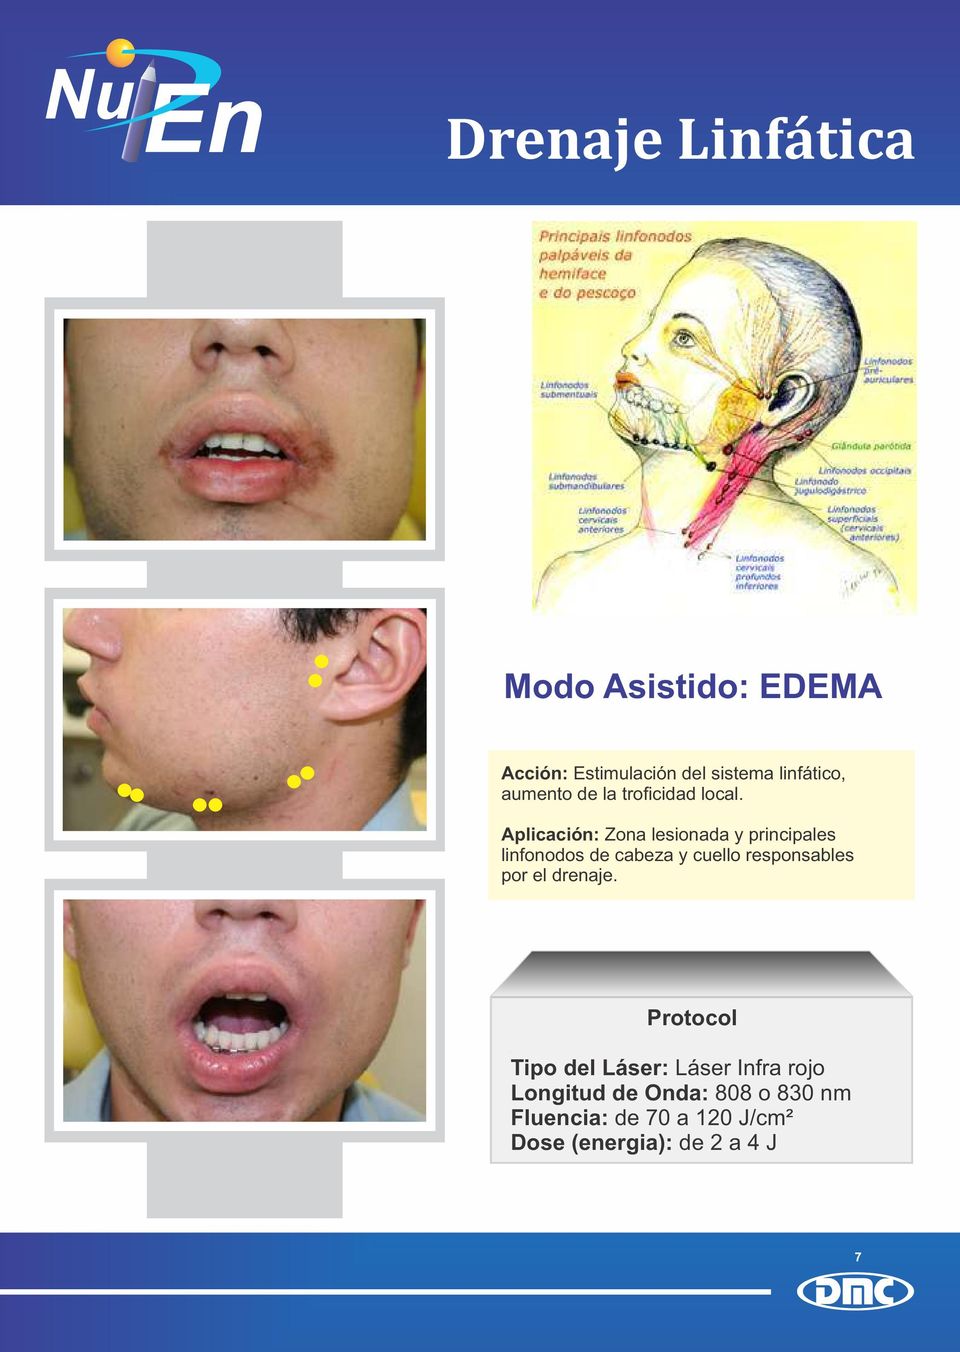 Aplicación: Zona lesionada y principales linfonodos de cabeza y